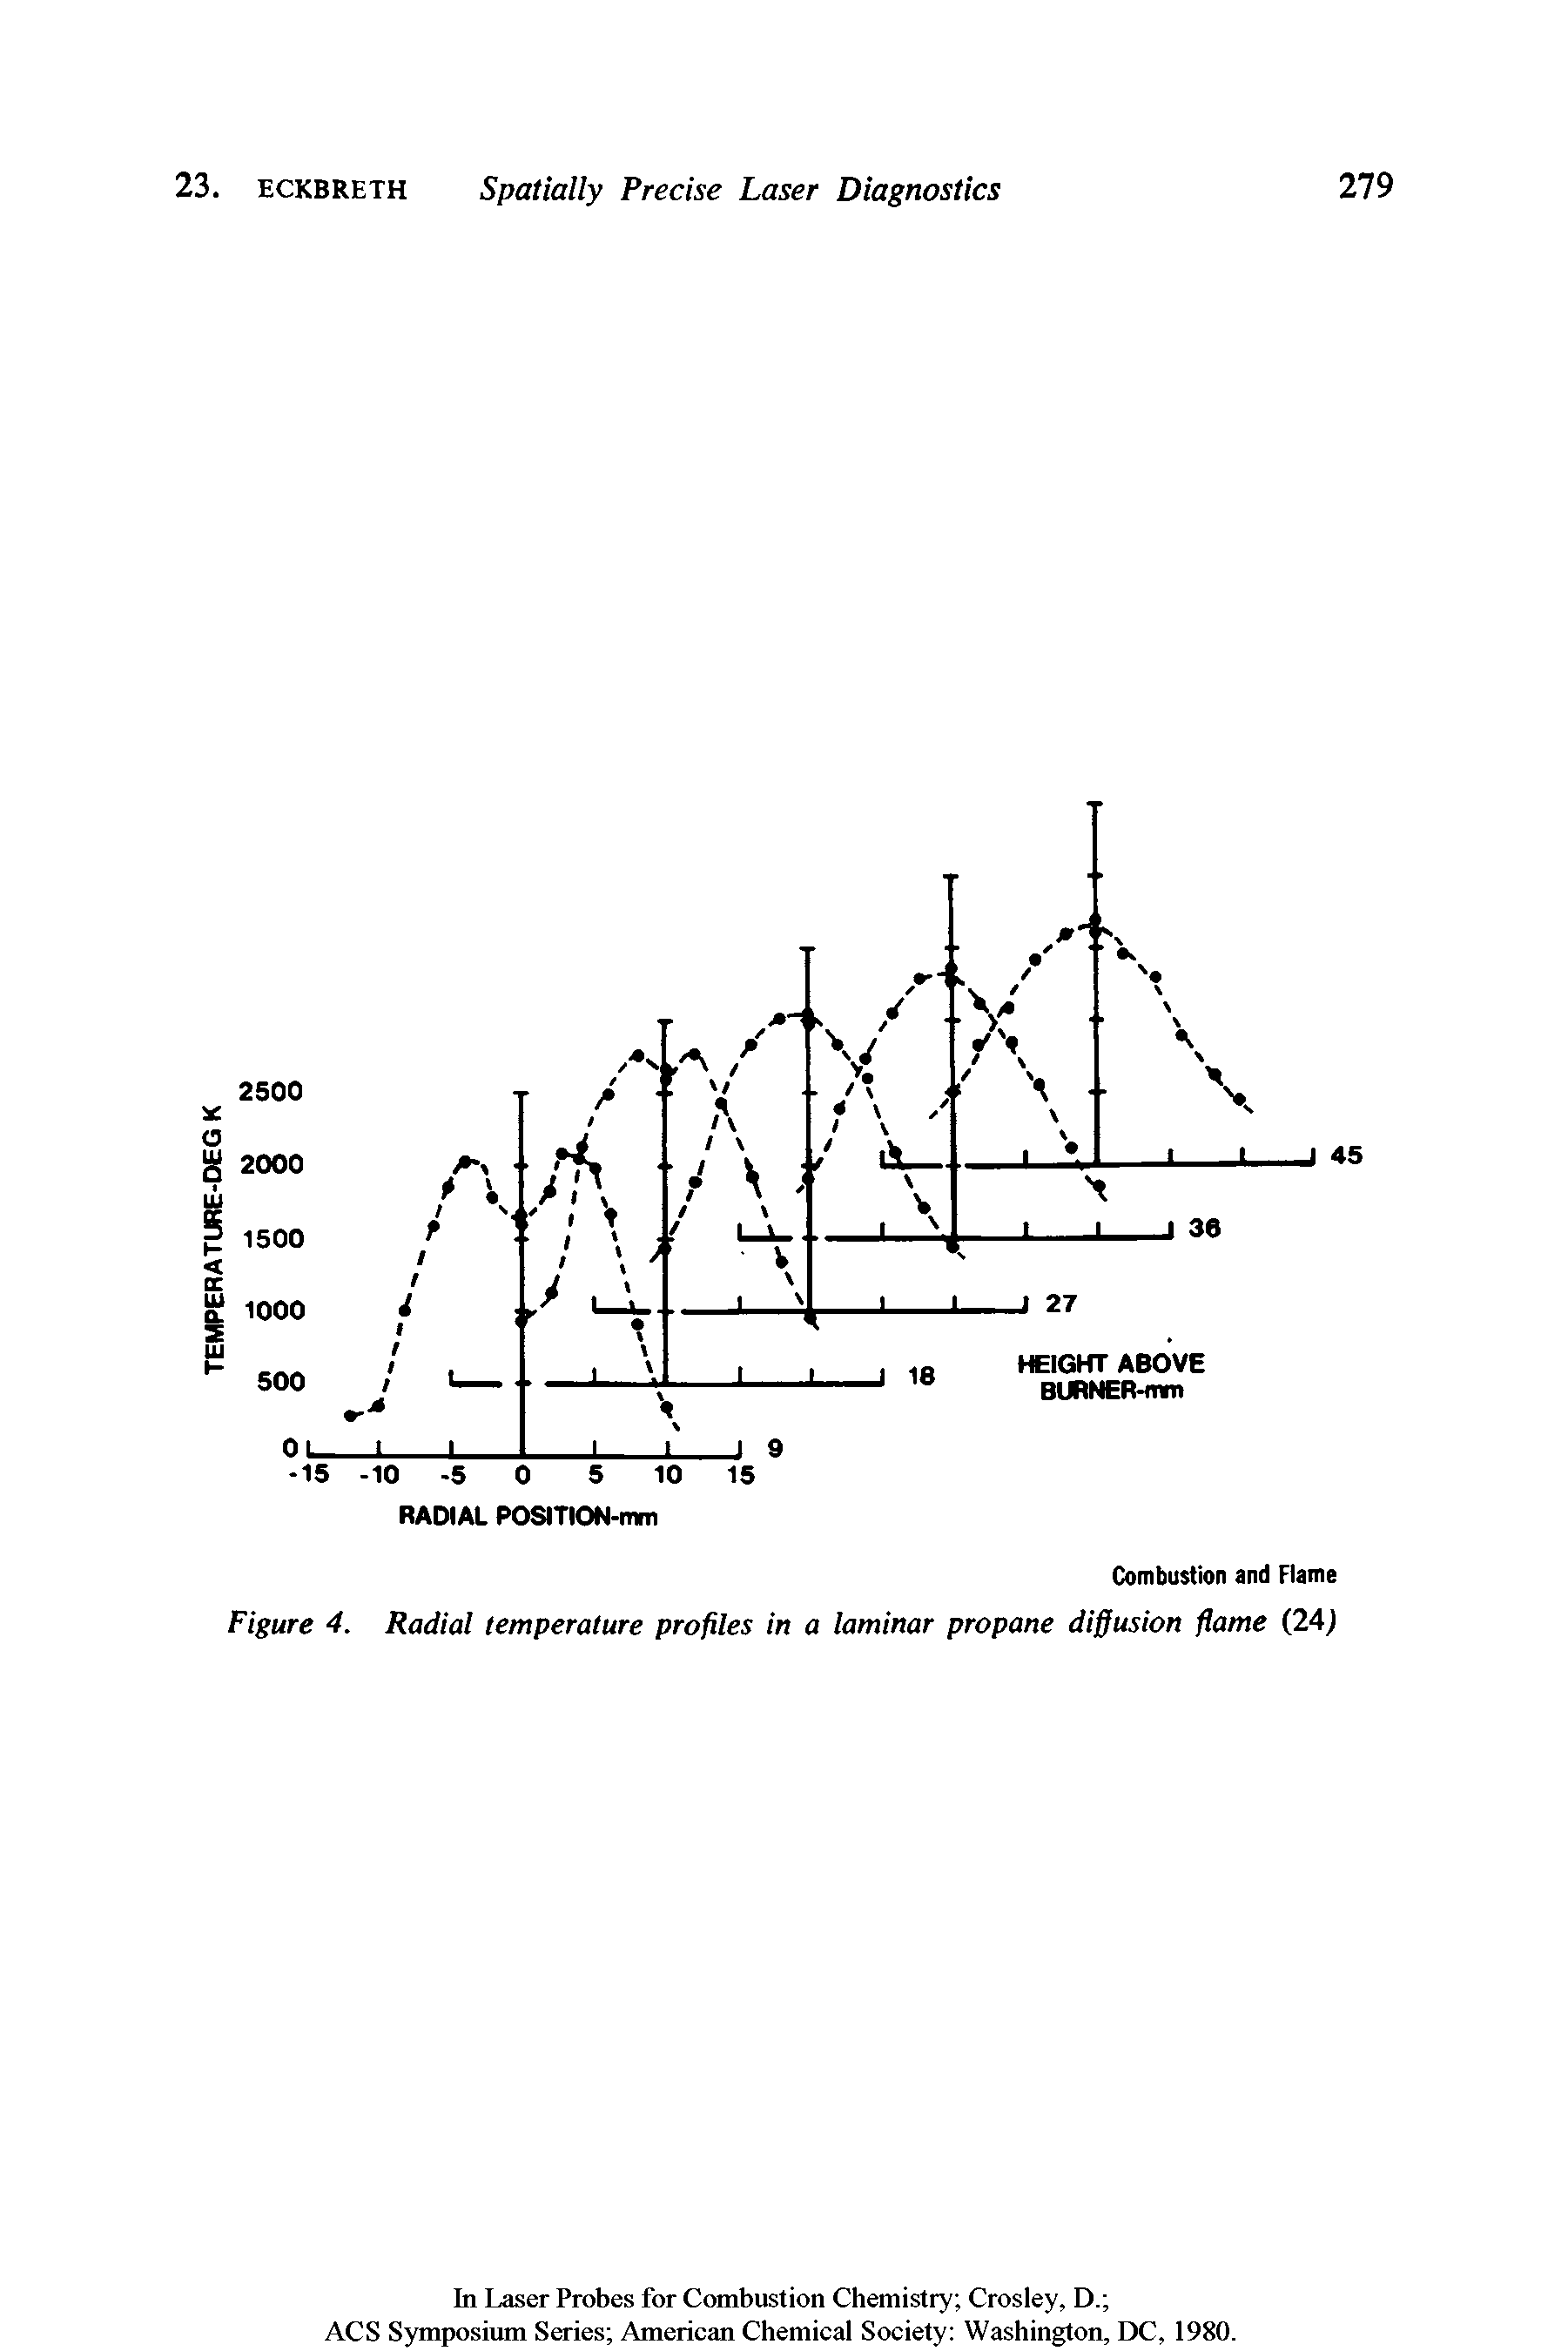 Figure 4. Radial temperature profiles in a laminar propane diffusion flame (24)...